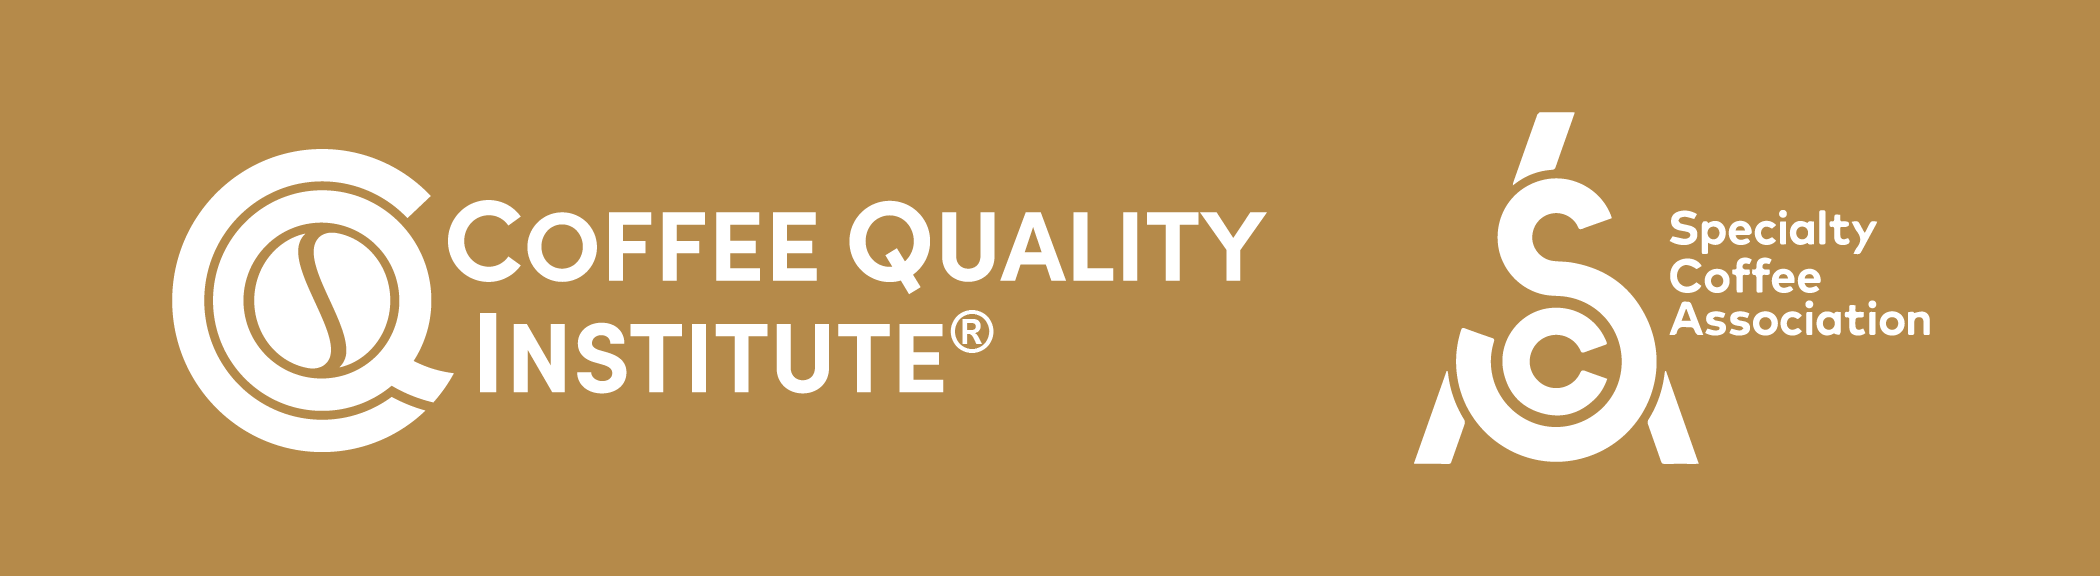 Bandeau reprenant les logo de la Specialty Coffee Association et du Coffee Quality Institute